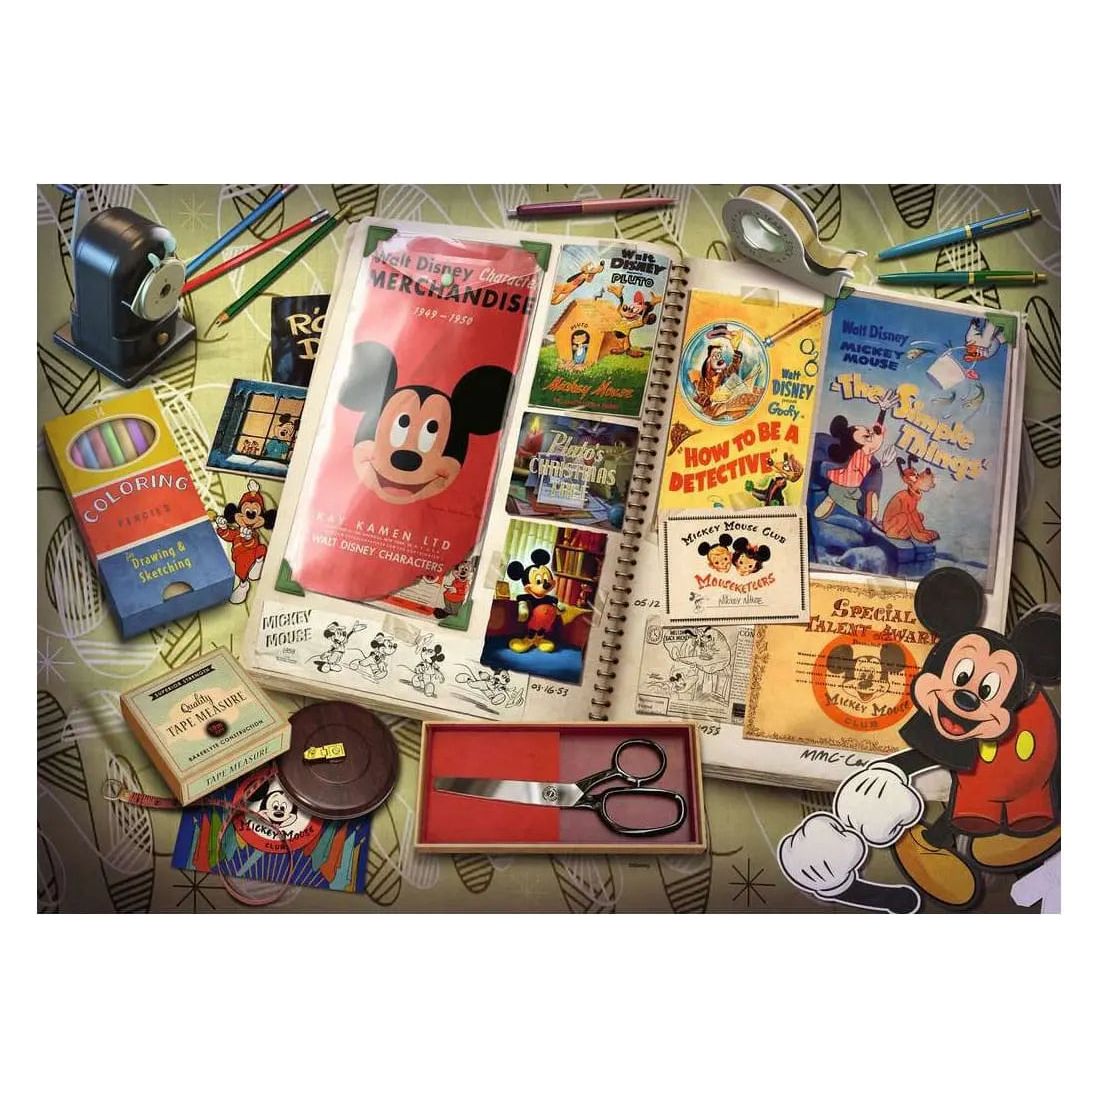 Puzzle 1000 piezas Disney 1937 Collector's Edition - Estalia